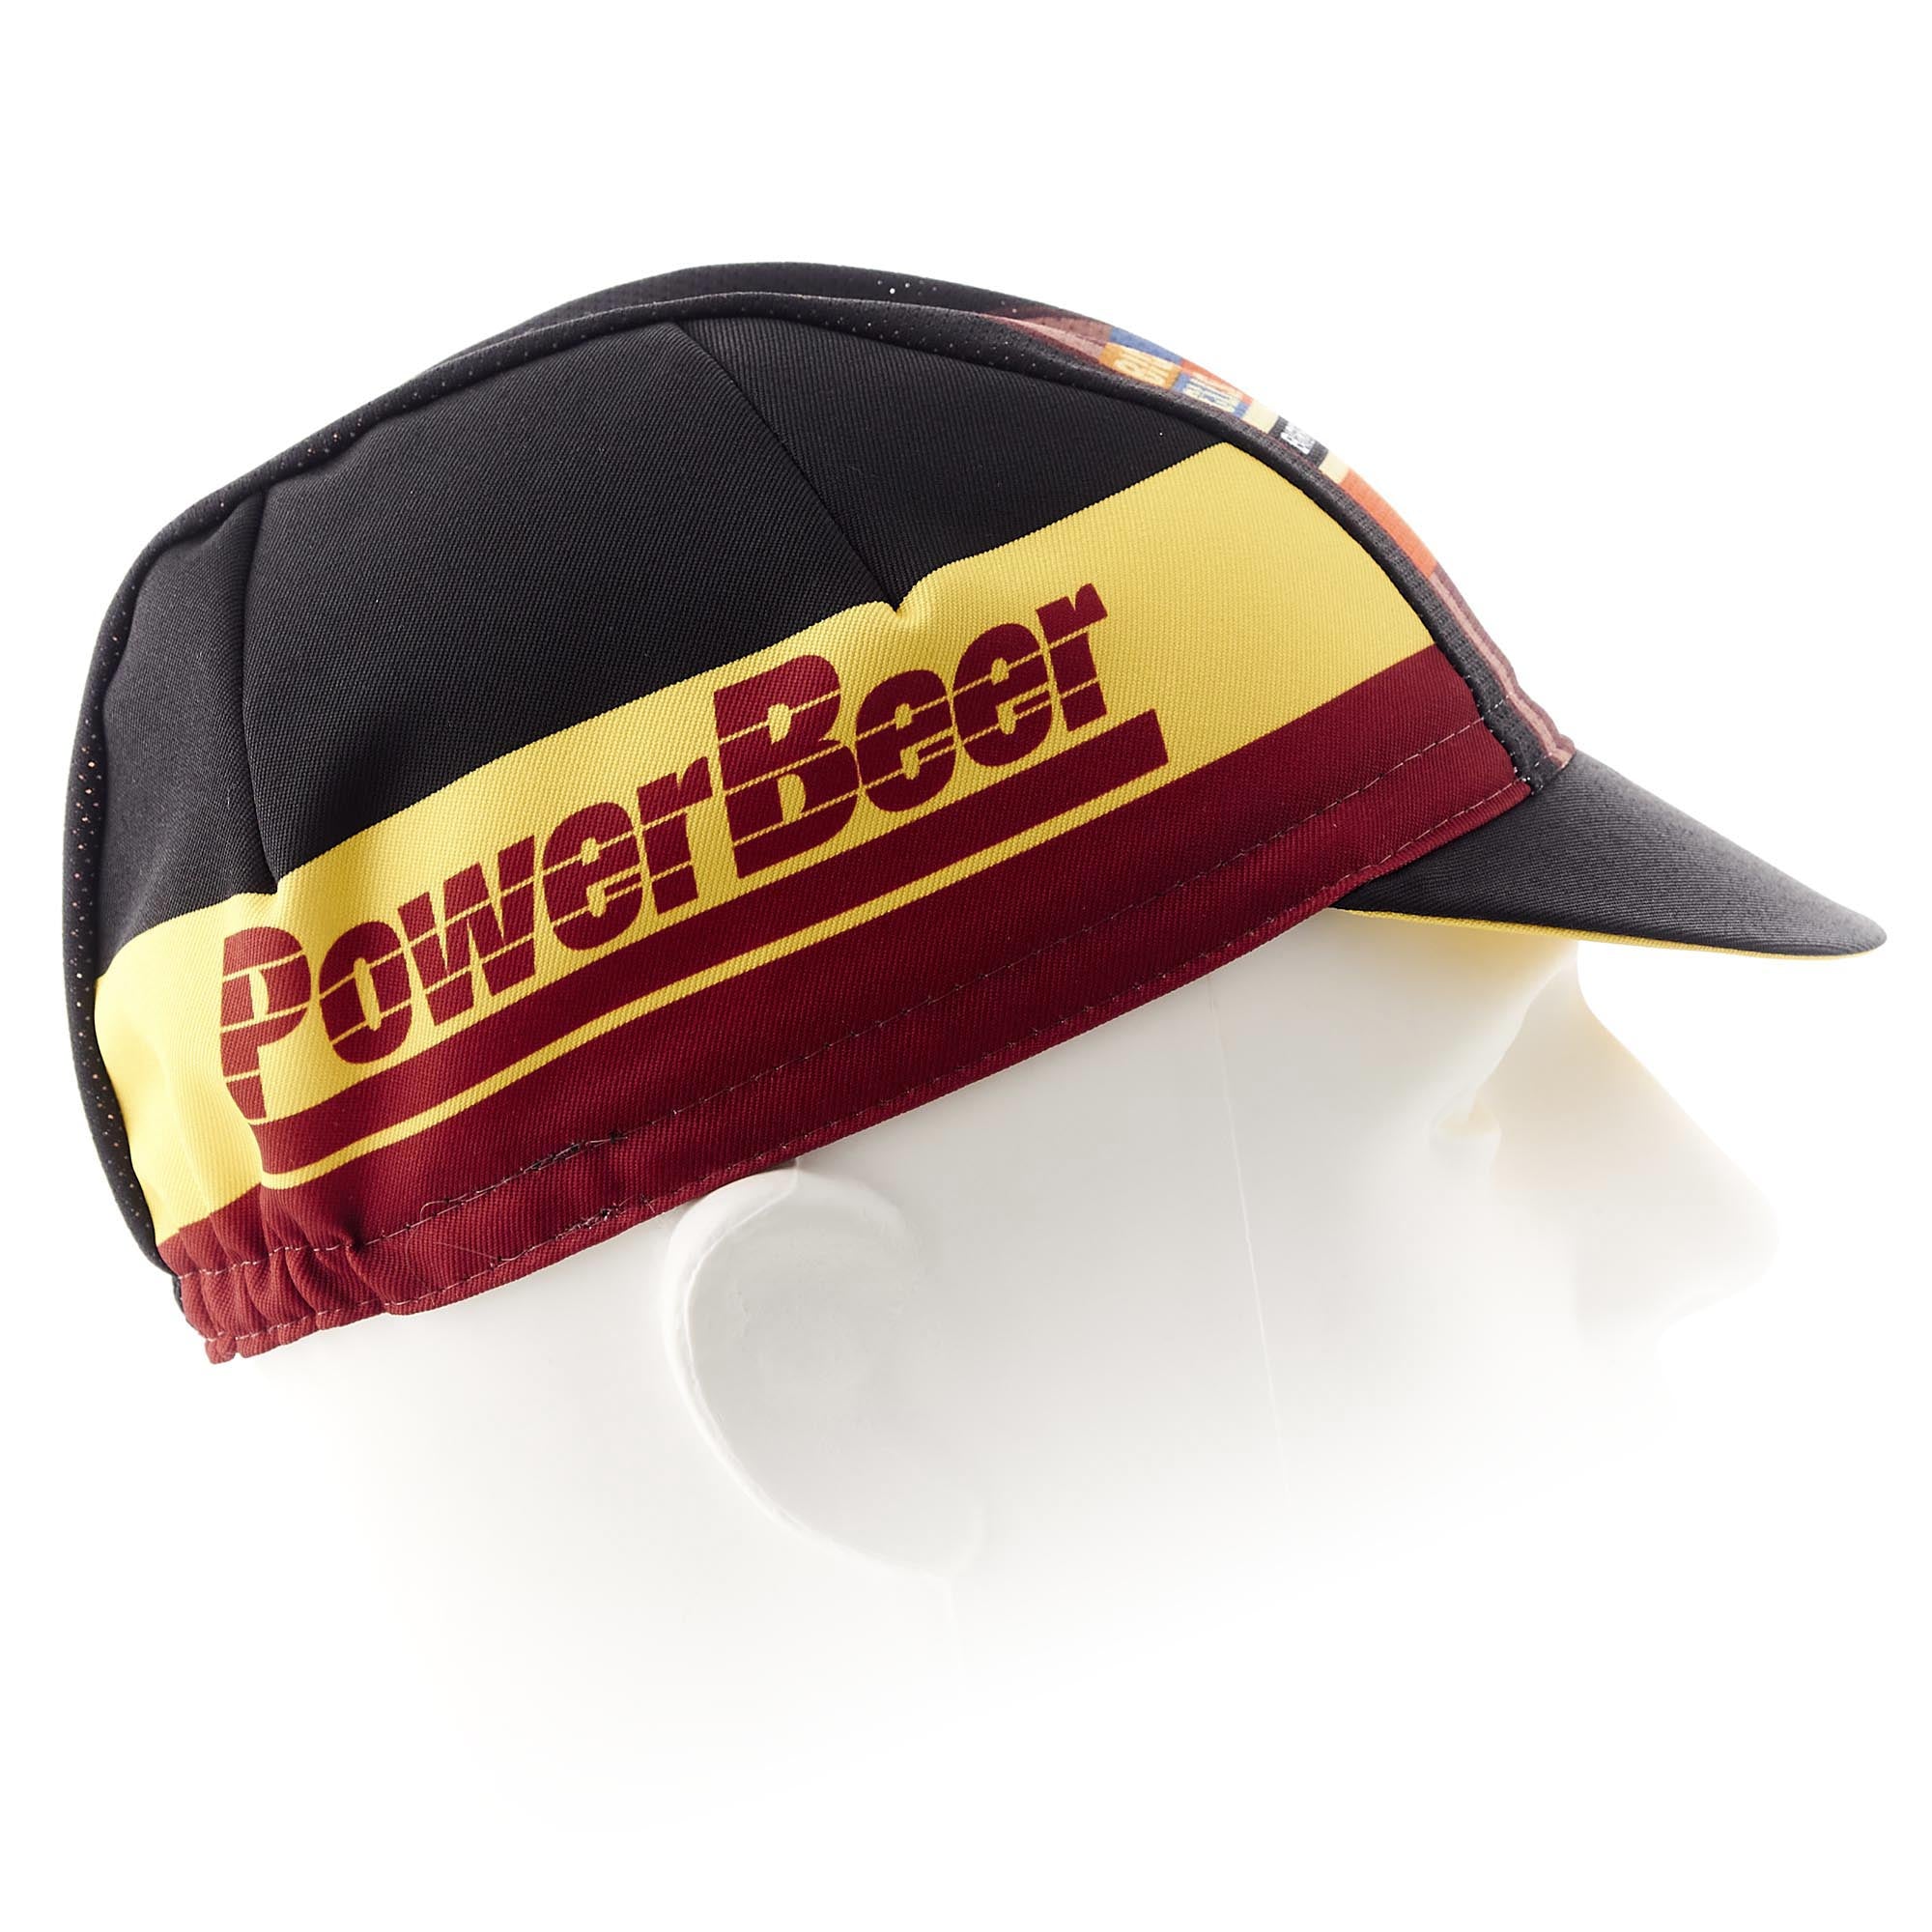 POWERBEER cap